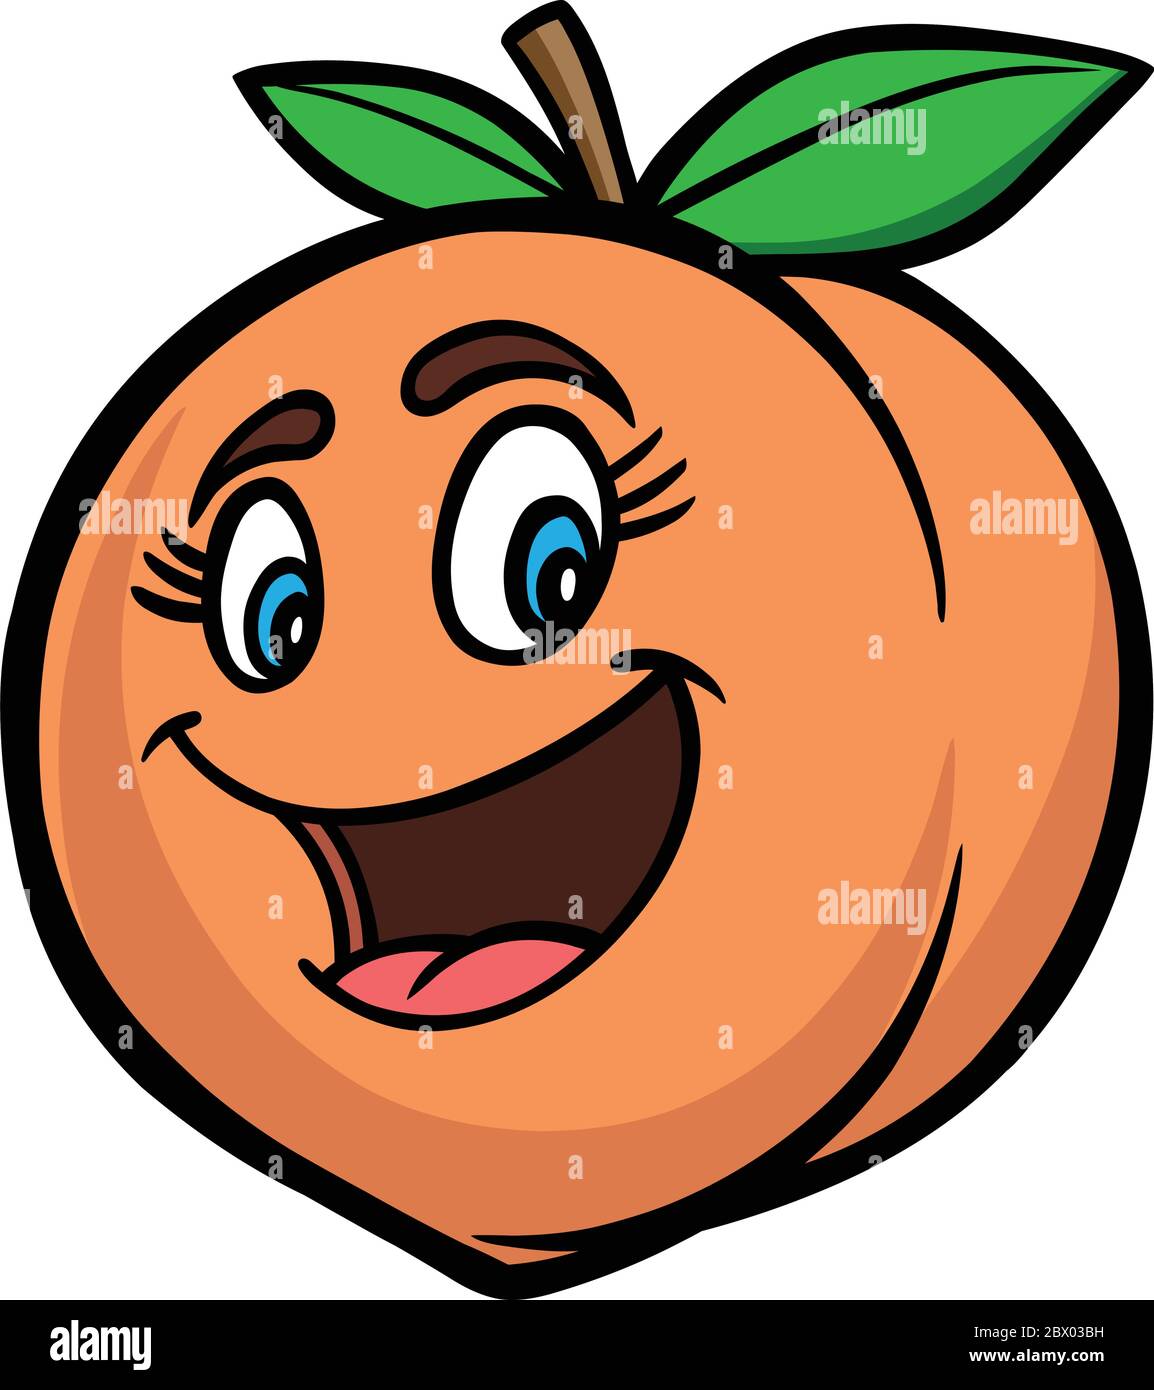 Peach Cartoon - An illustration of a Peach Cartoon Stock Vector Image & Art  - Alamy